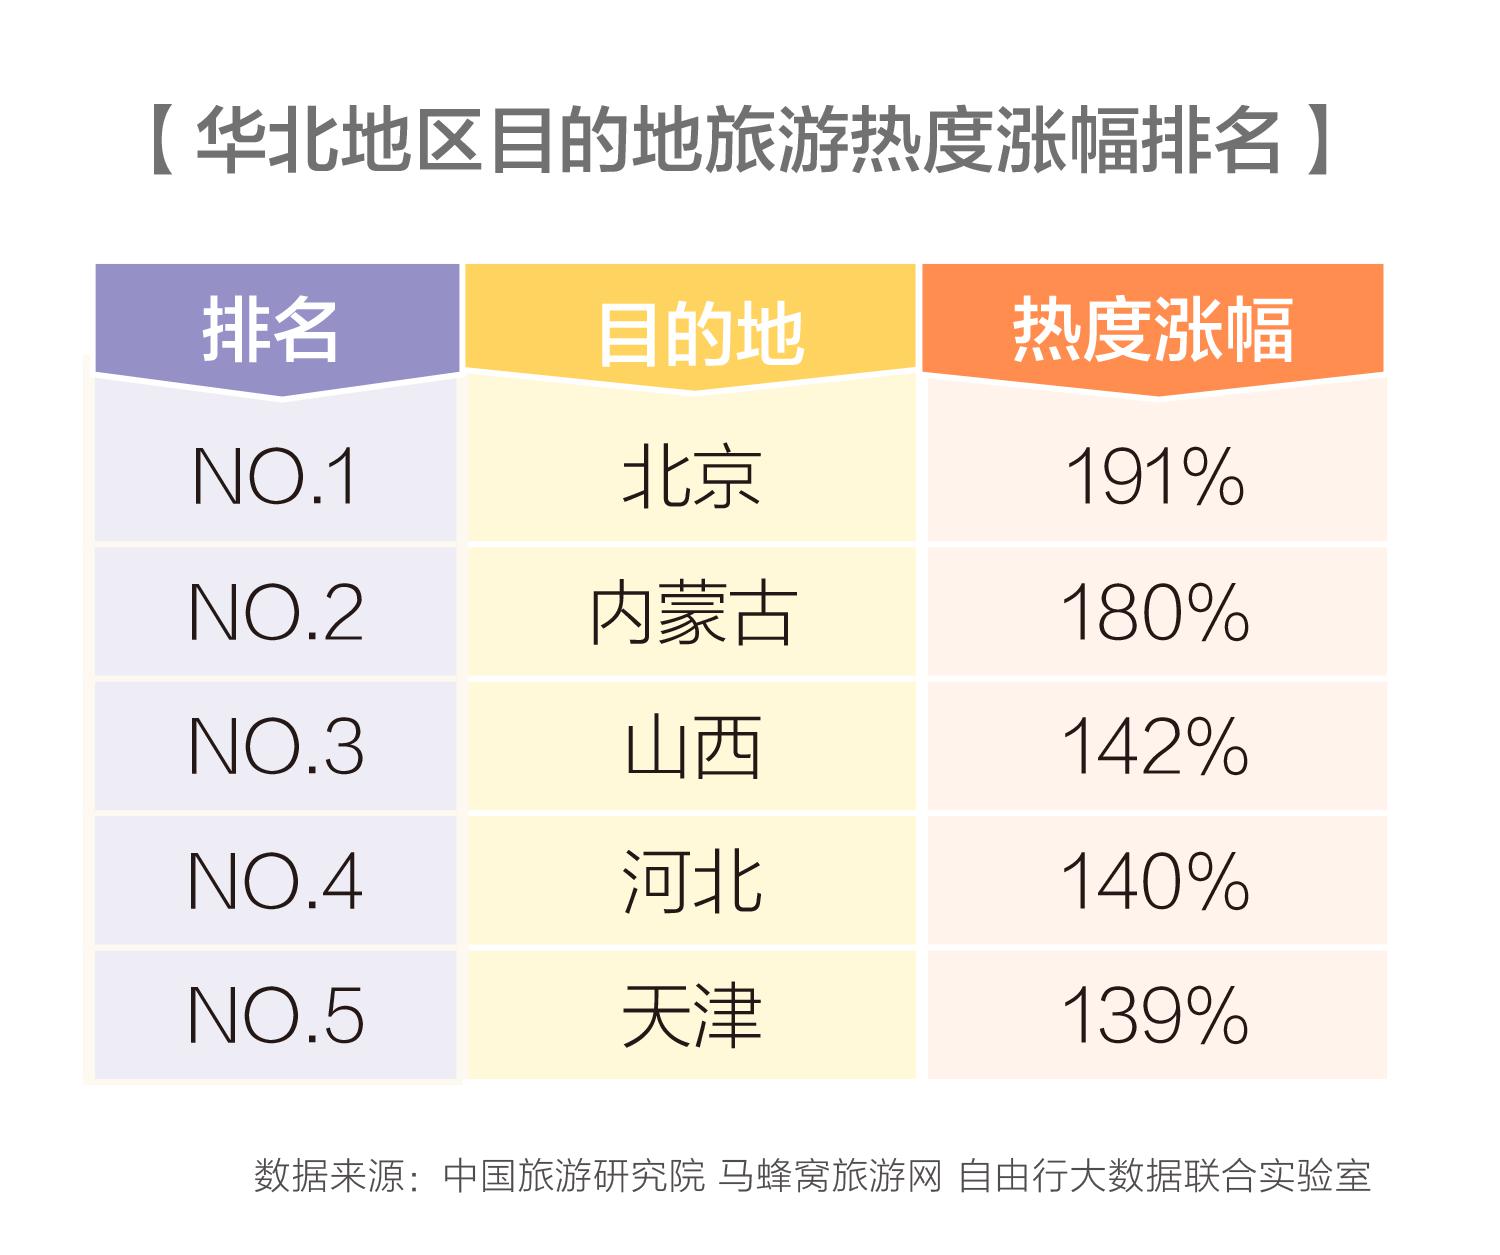 马蜂窝中国旅游研究院：2018年华北旅游报告 北京热度涨幅达到191%